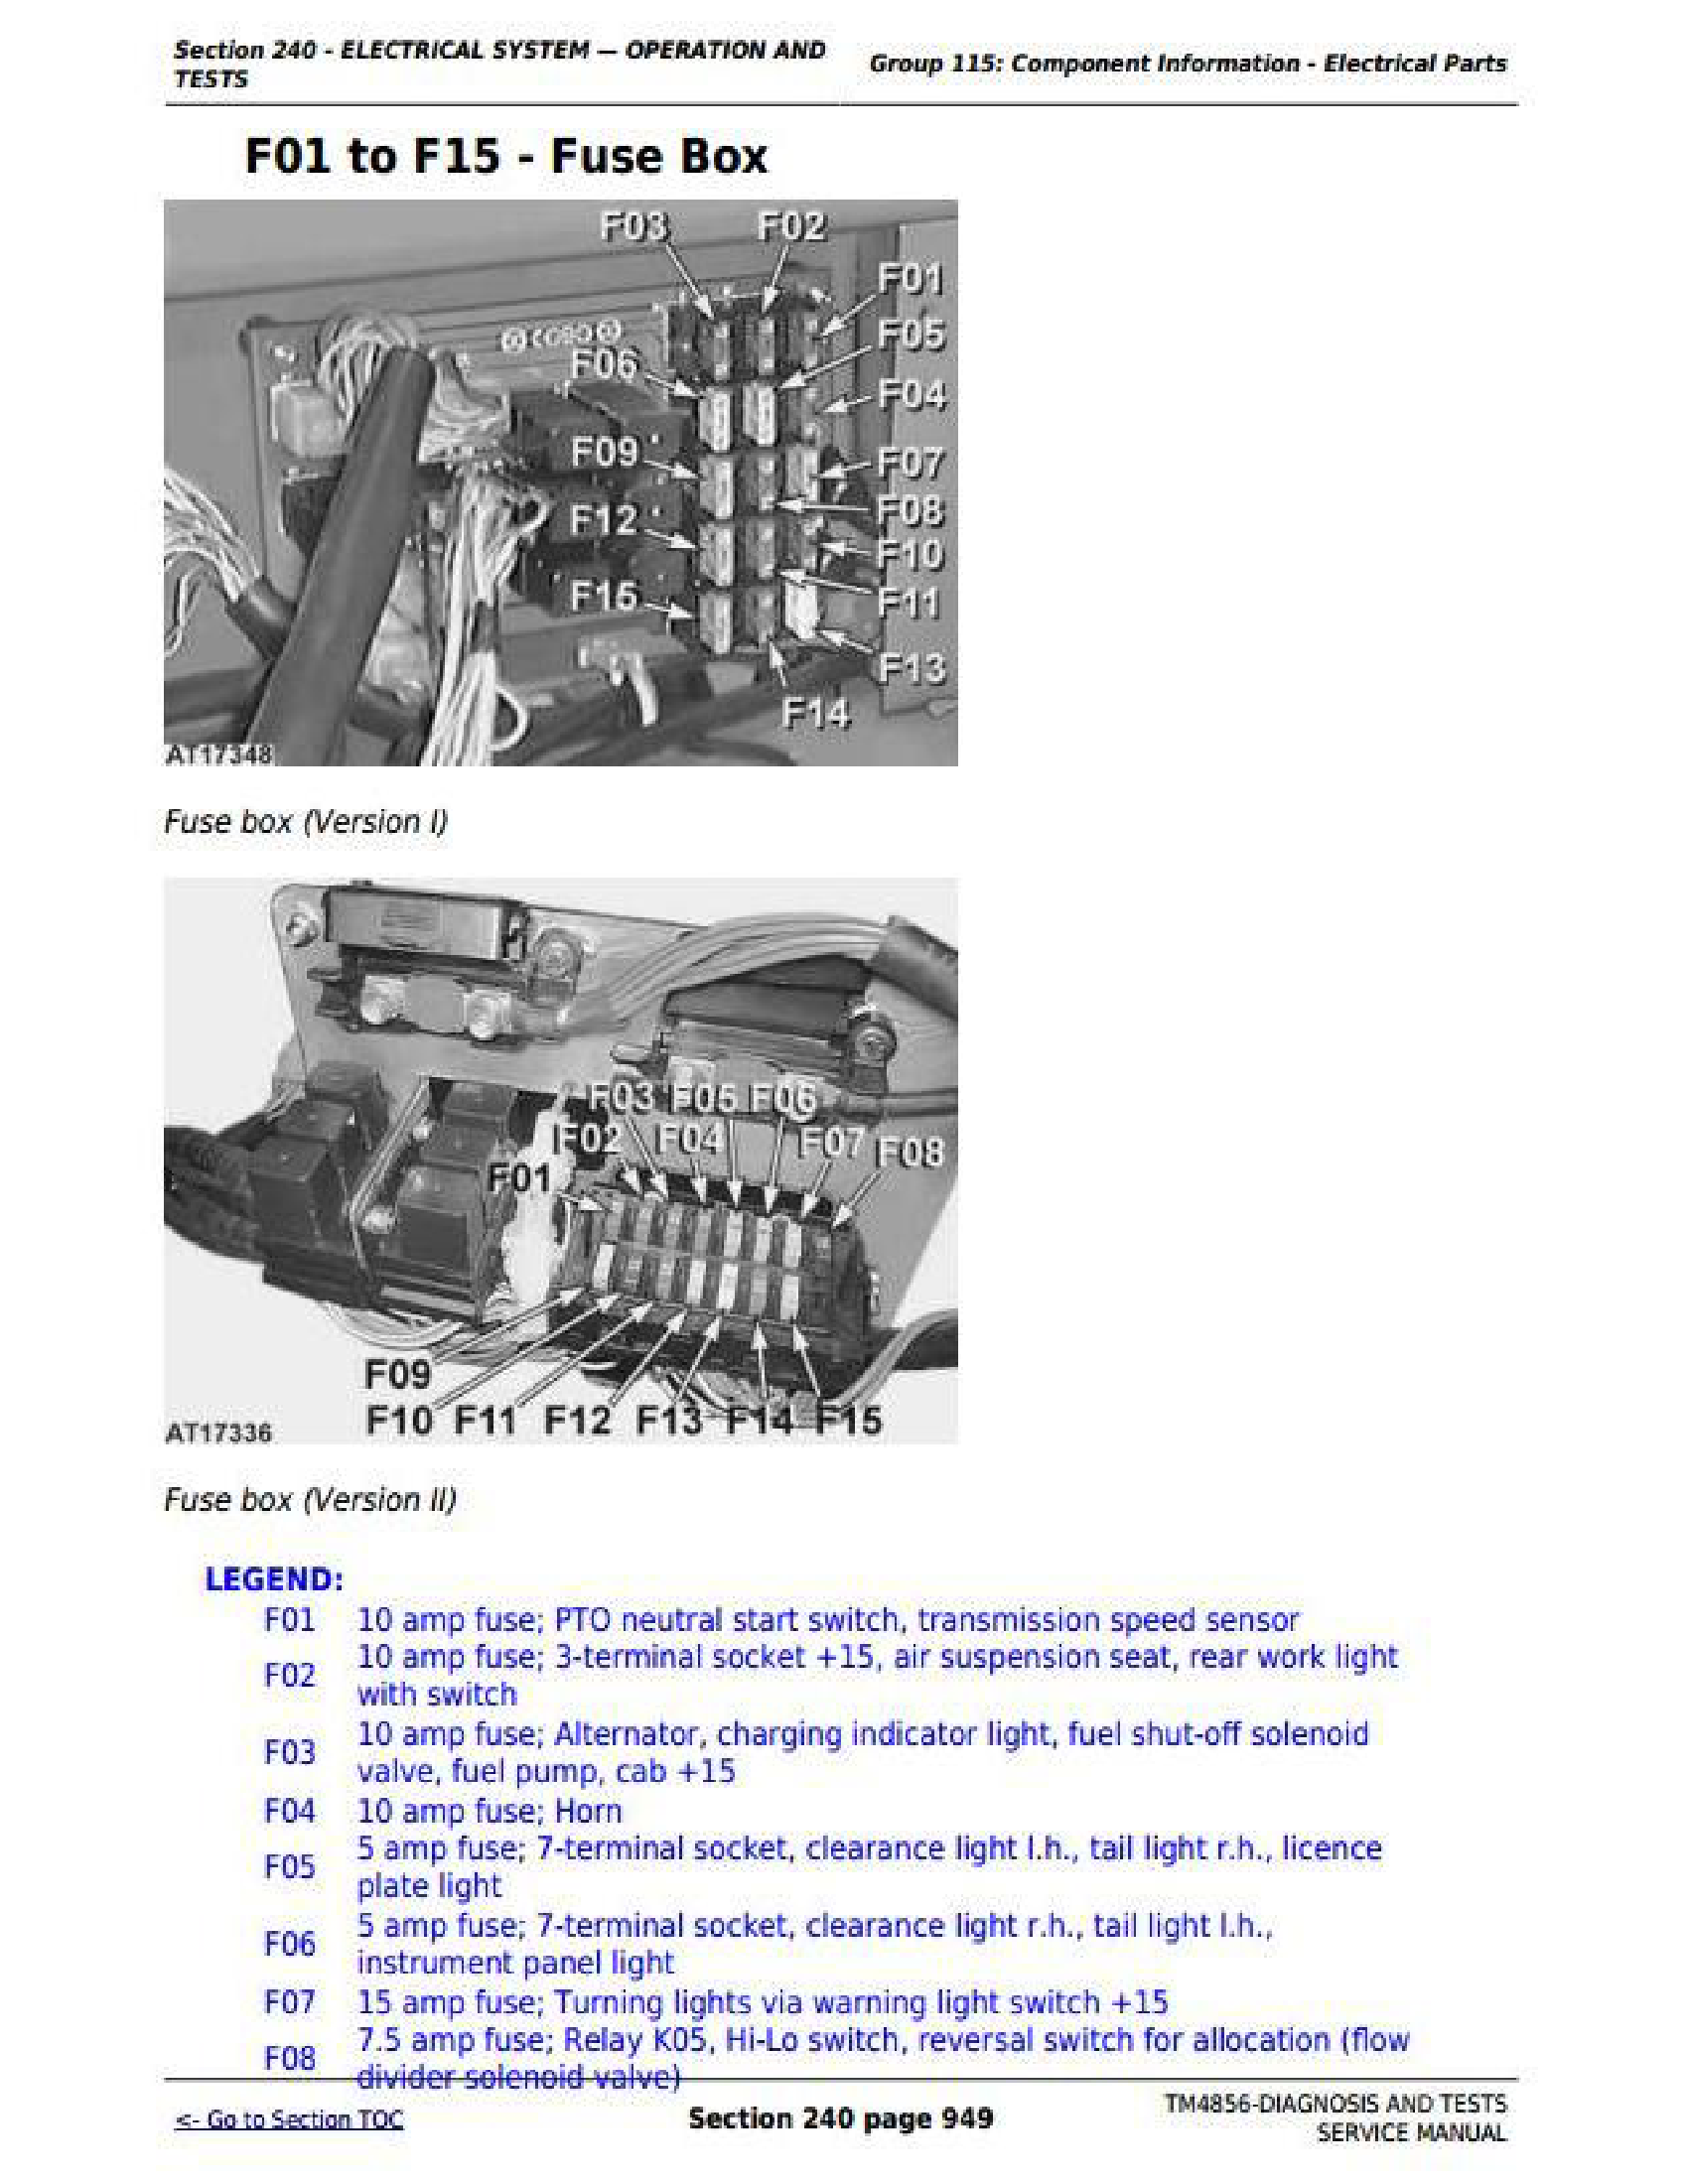 John Deere 5515 manual pdf